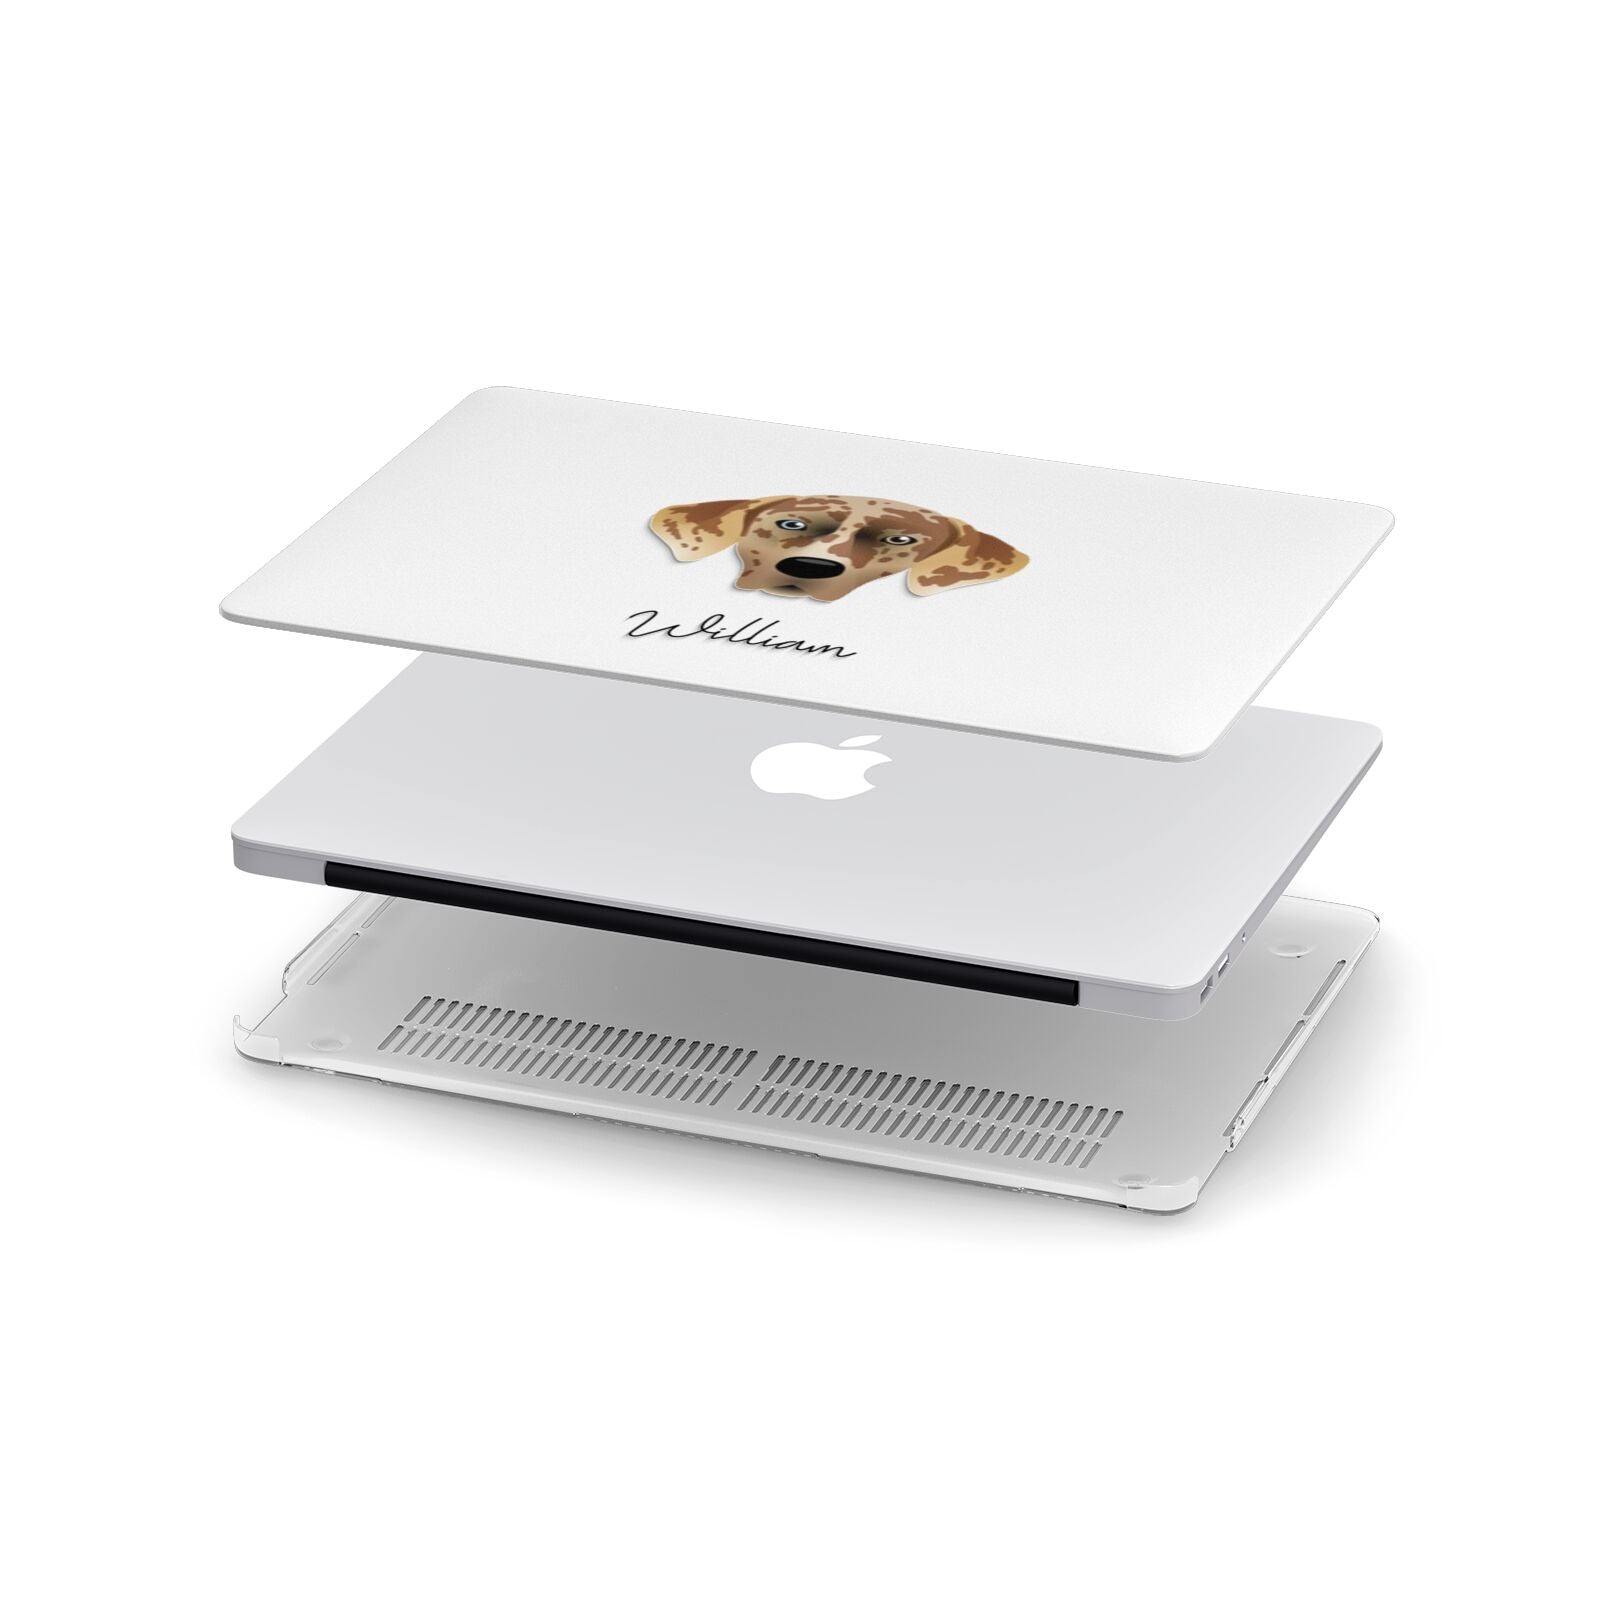 American Leopard Hound Personalised Apple MacBook Case in Detail